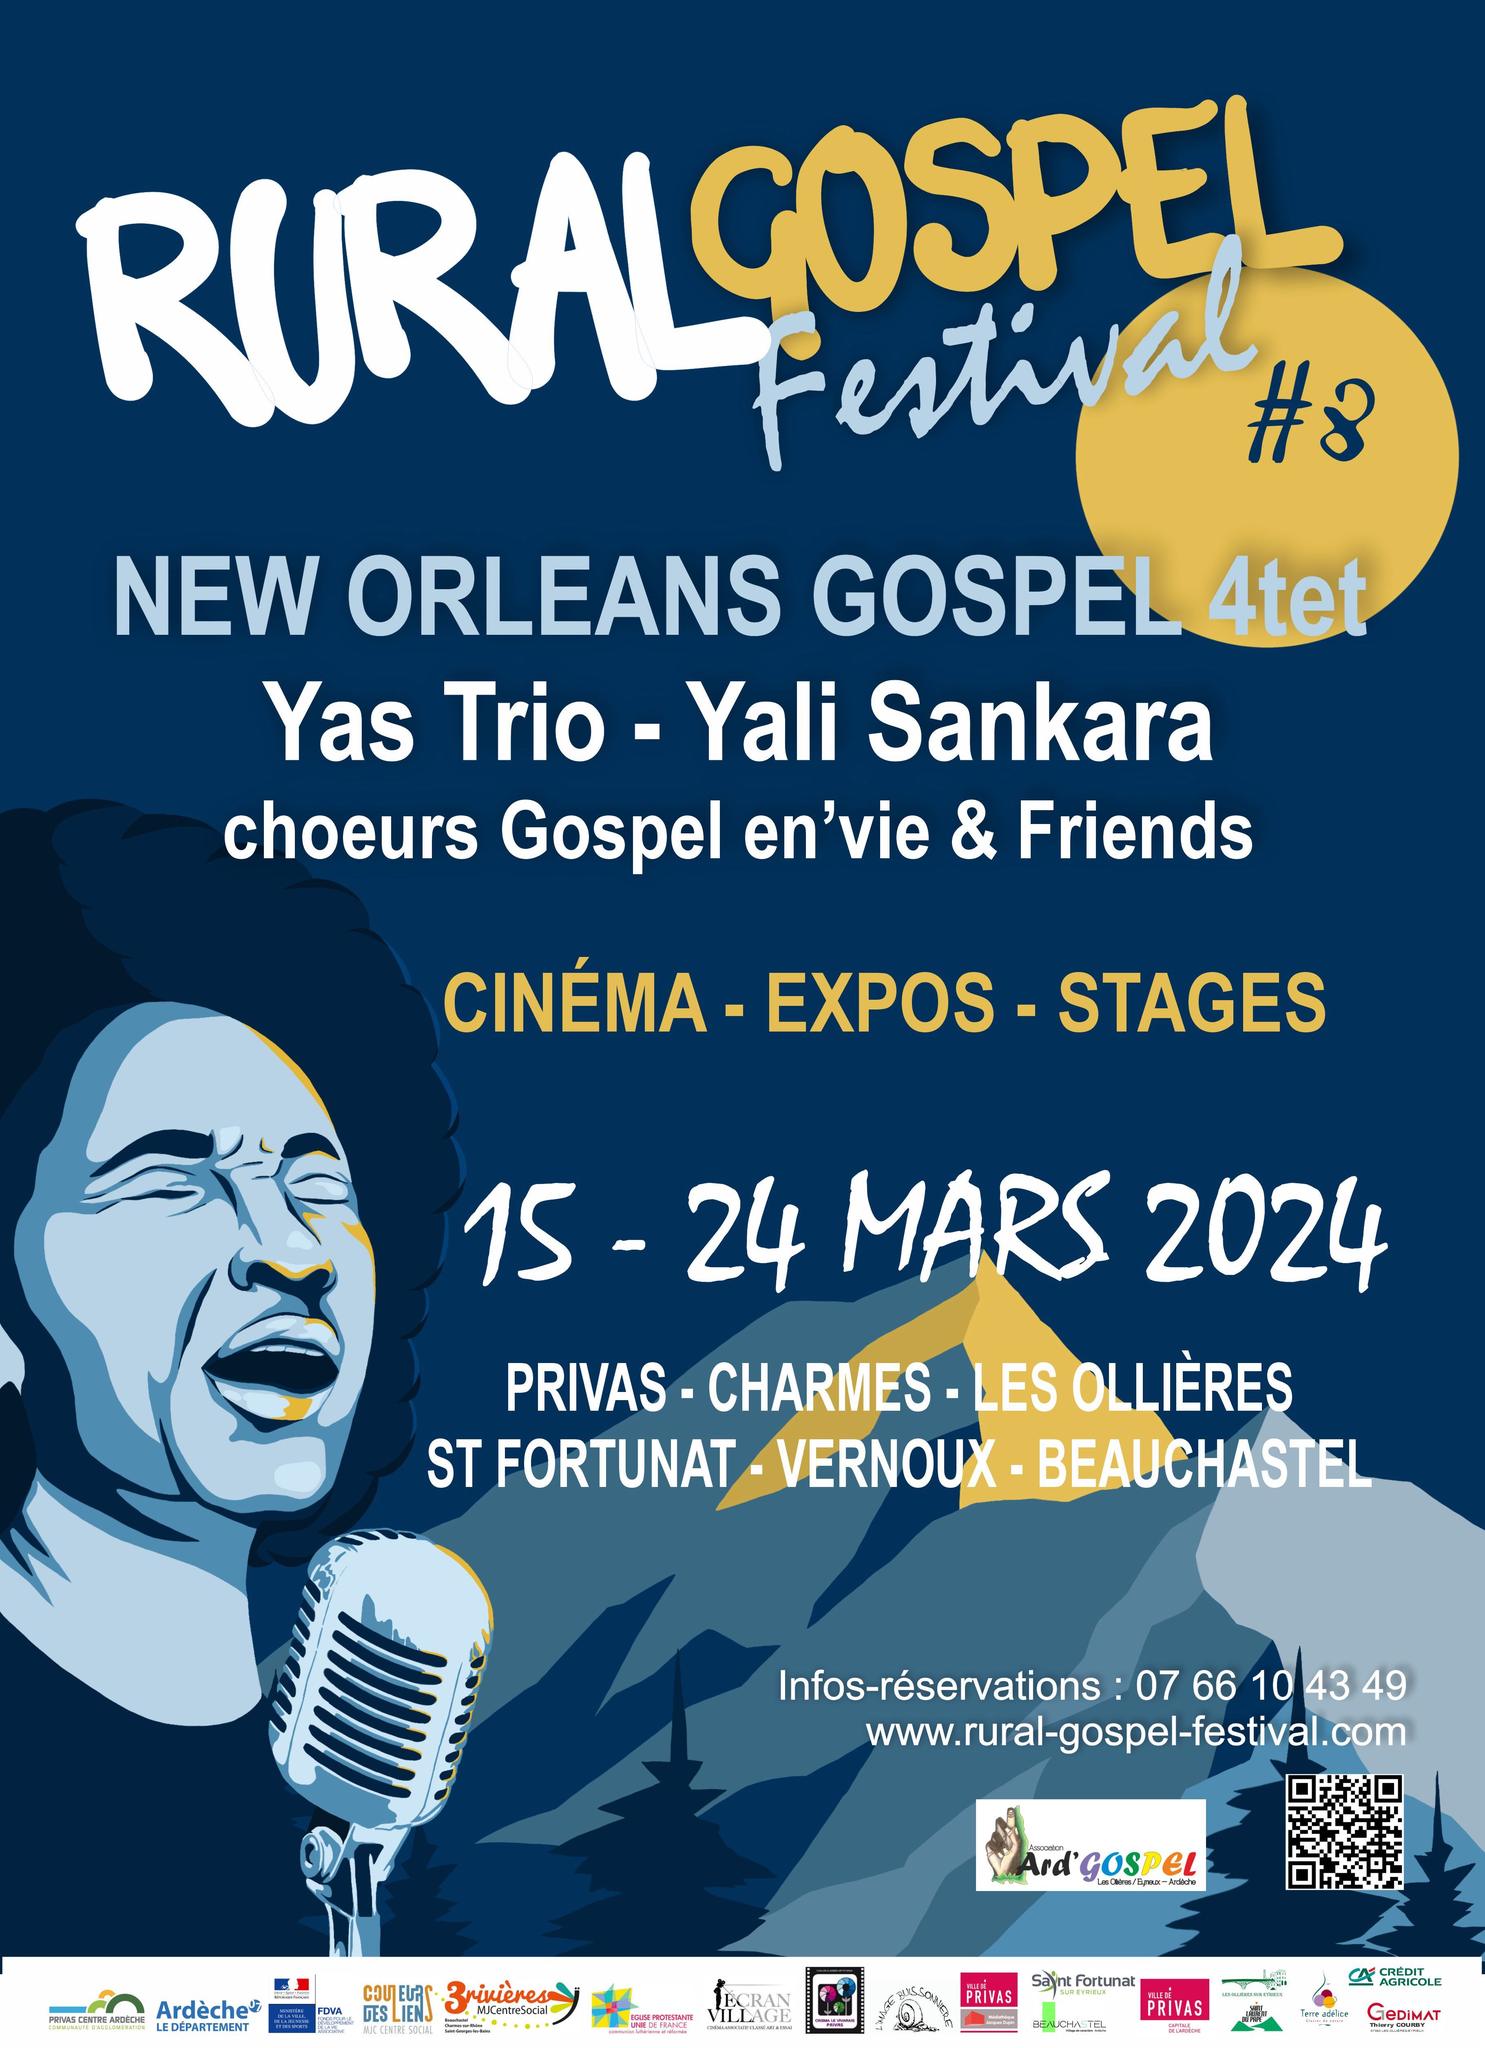 Alle leuke evenementen! : Célébration Gospel [Rural Gospel Festival #8]